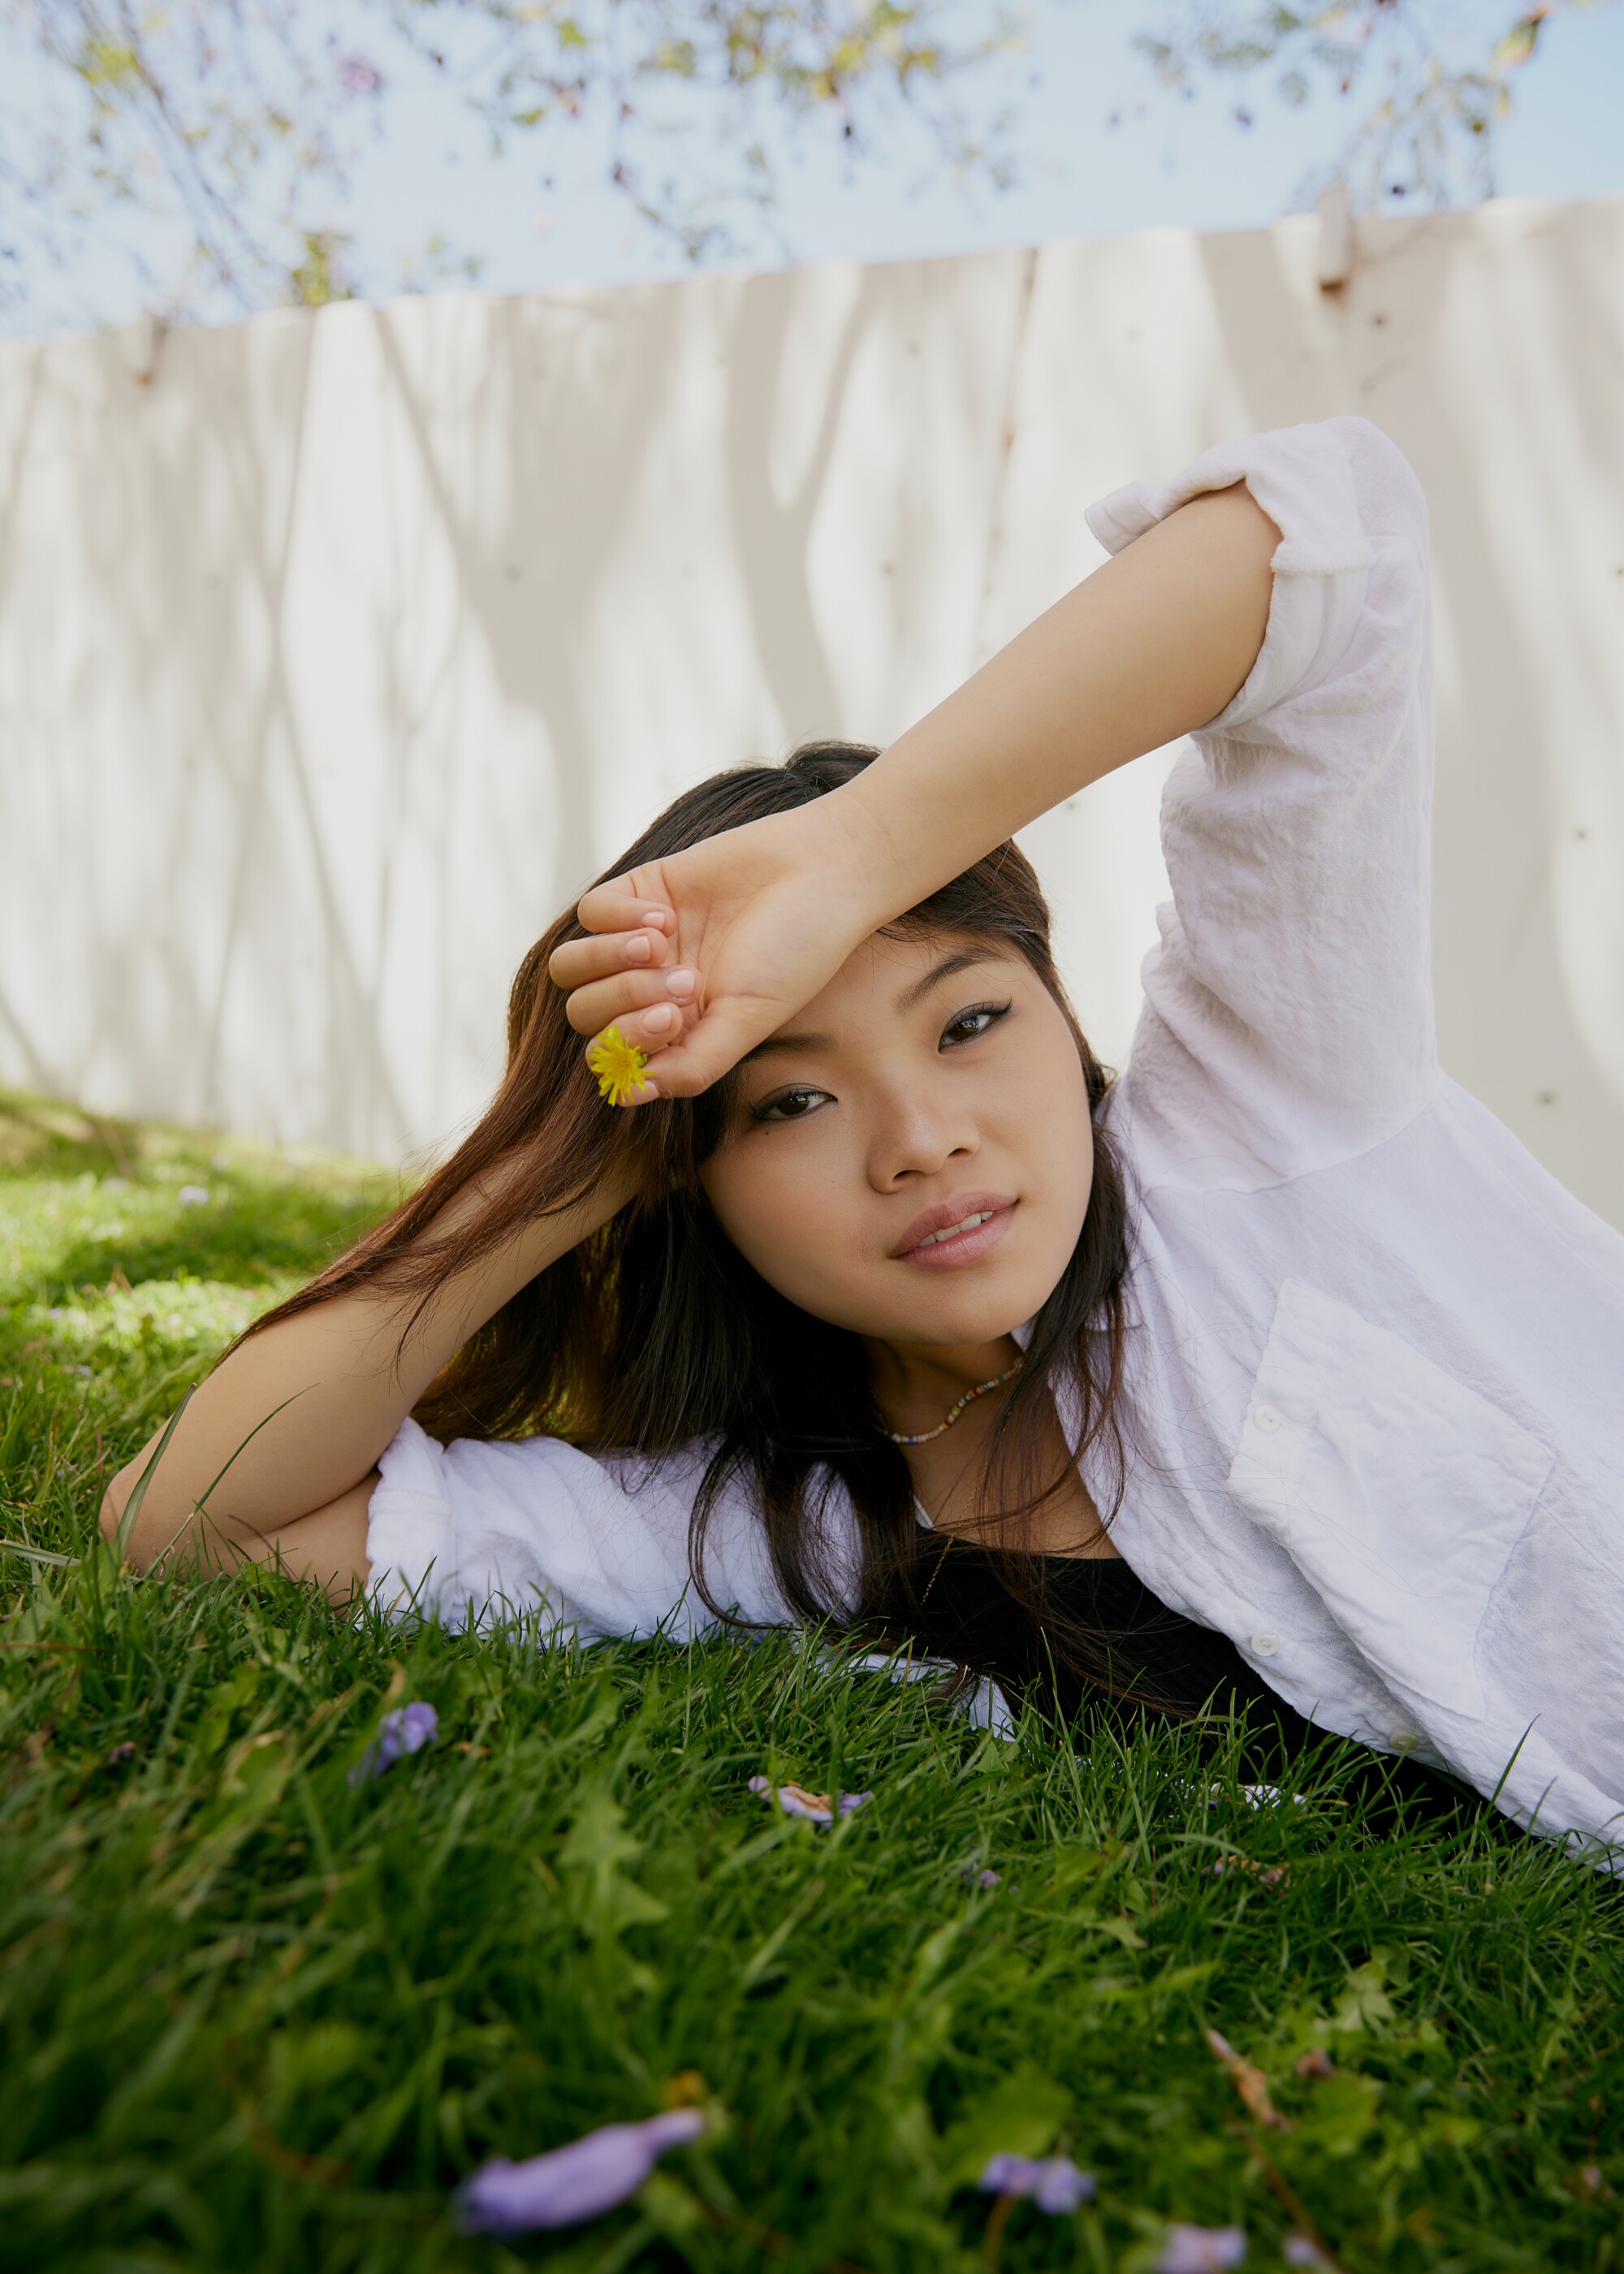 Mia Cheek è sdraiata sull'erba con in mano un piccolo fiore giallo.